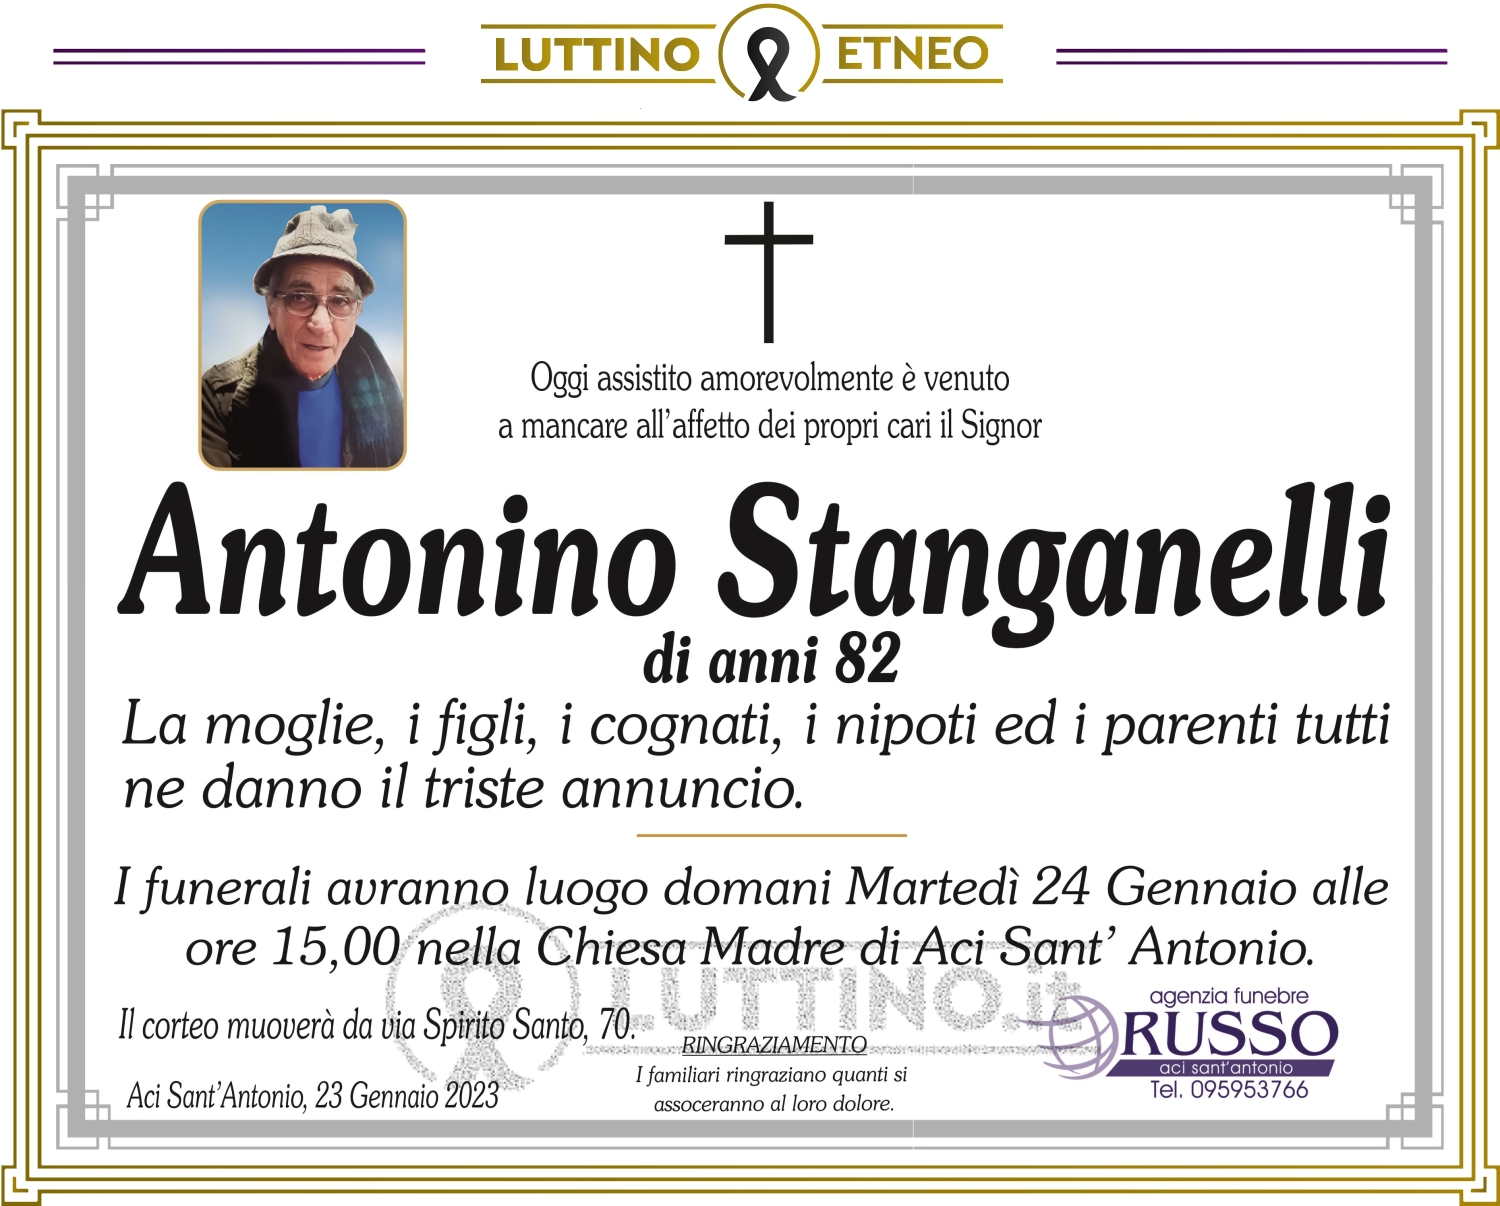 Antonino  Stanganelli 